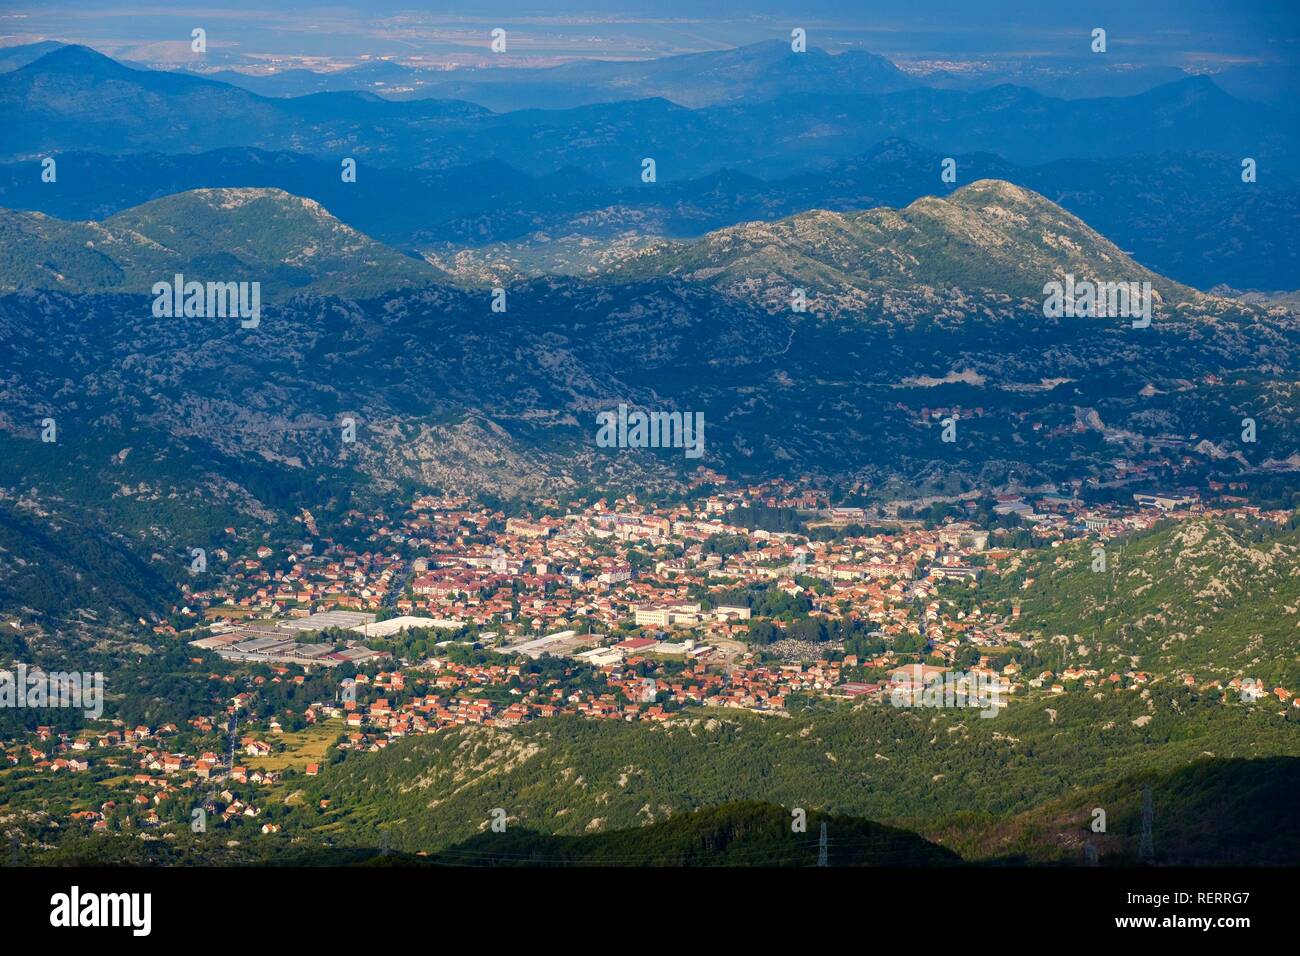 Cetinje, view from Jezerski Vrh in Lovcen National Park, Montenegro Stock Photo